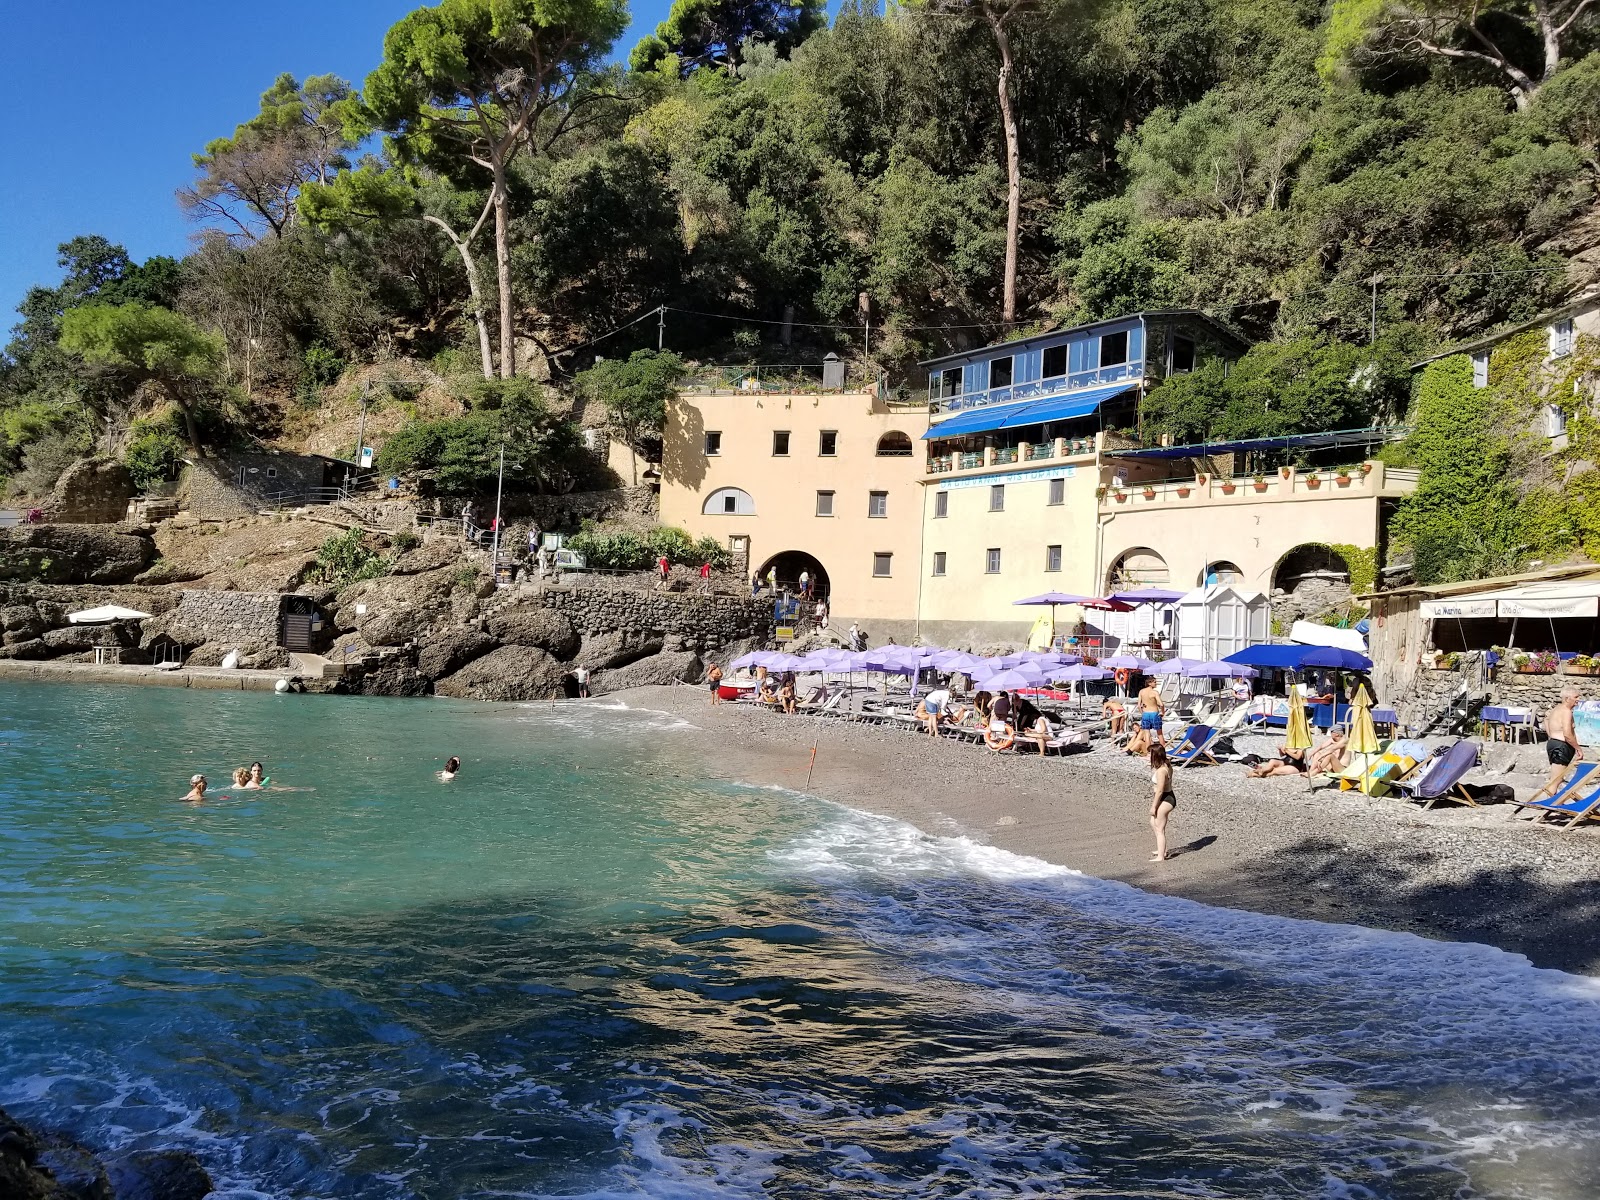 Spiaggia San Fruttuoso'in fotoğrafı küçük koy ile birlikte